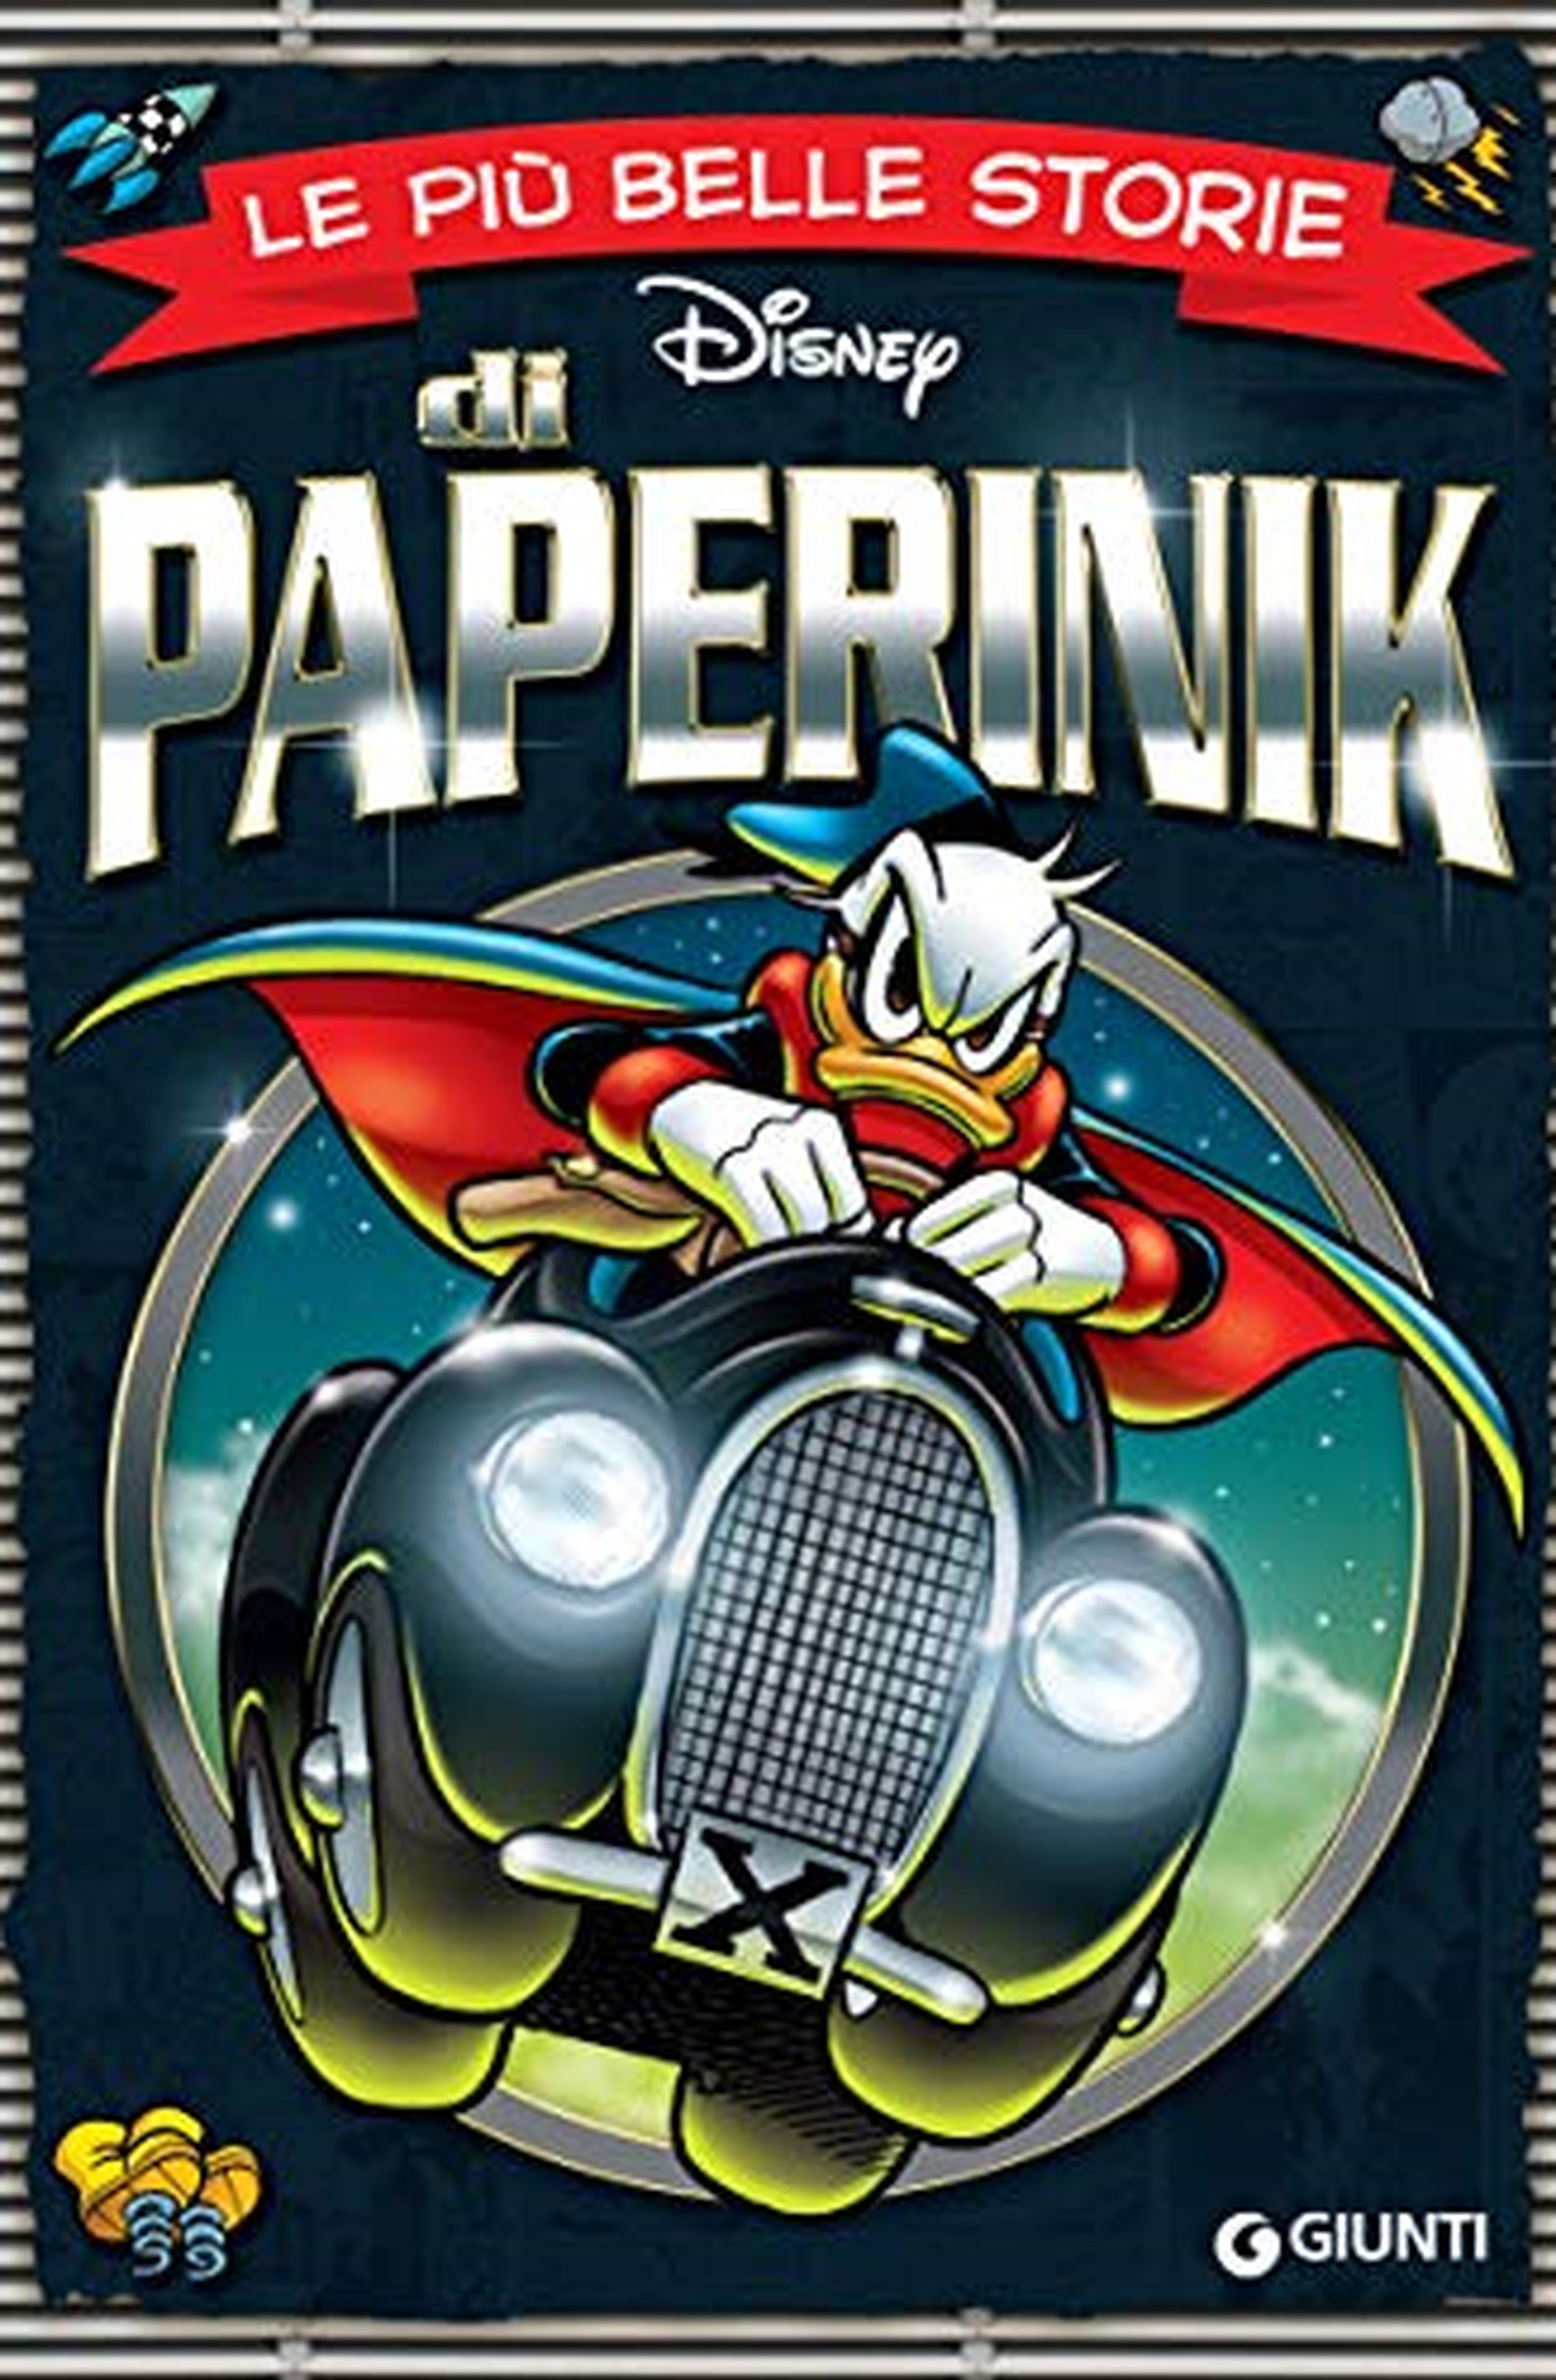 Le più belle storie di Paperinik (Storie a fumetti Vol. 50)